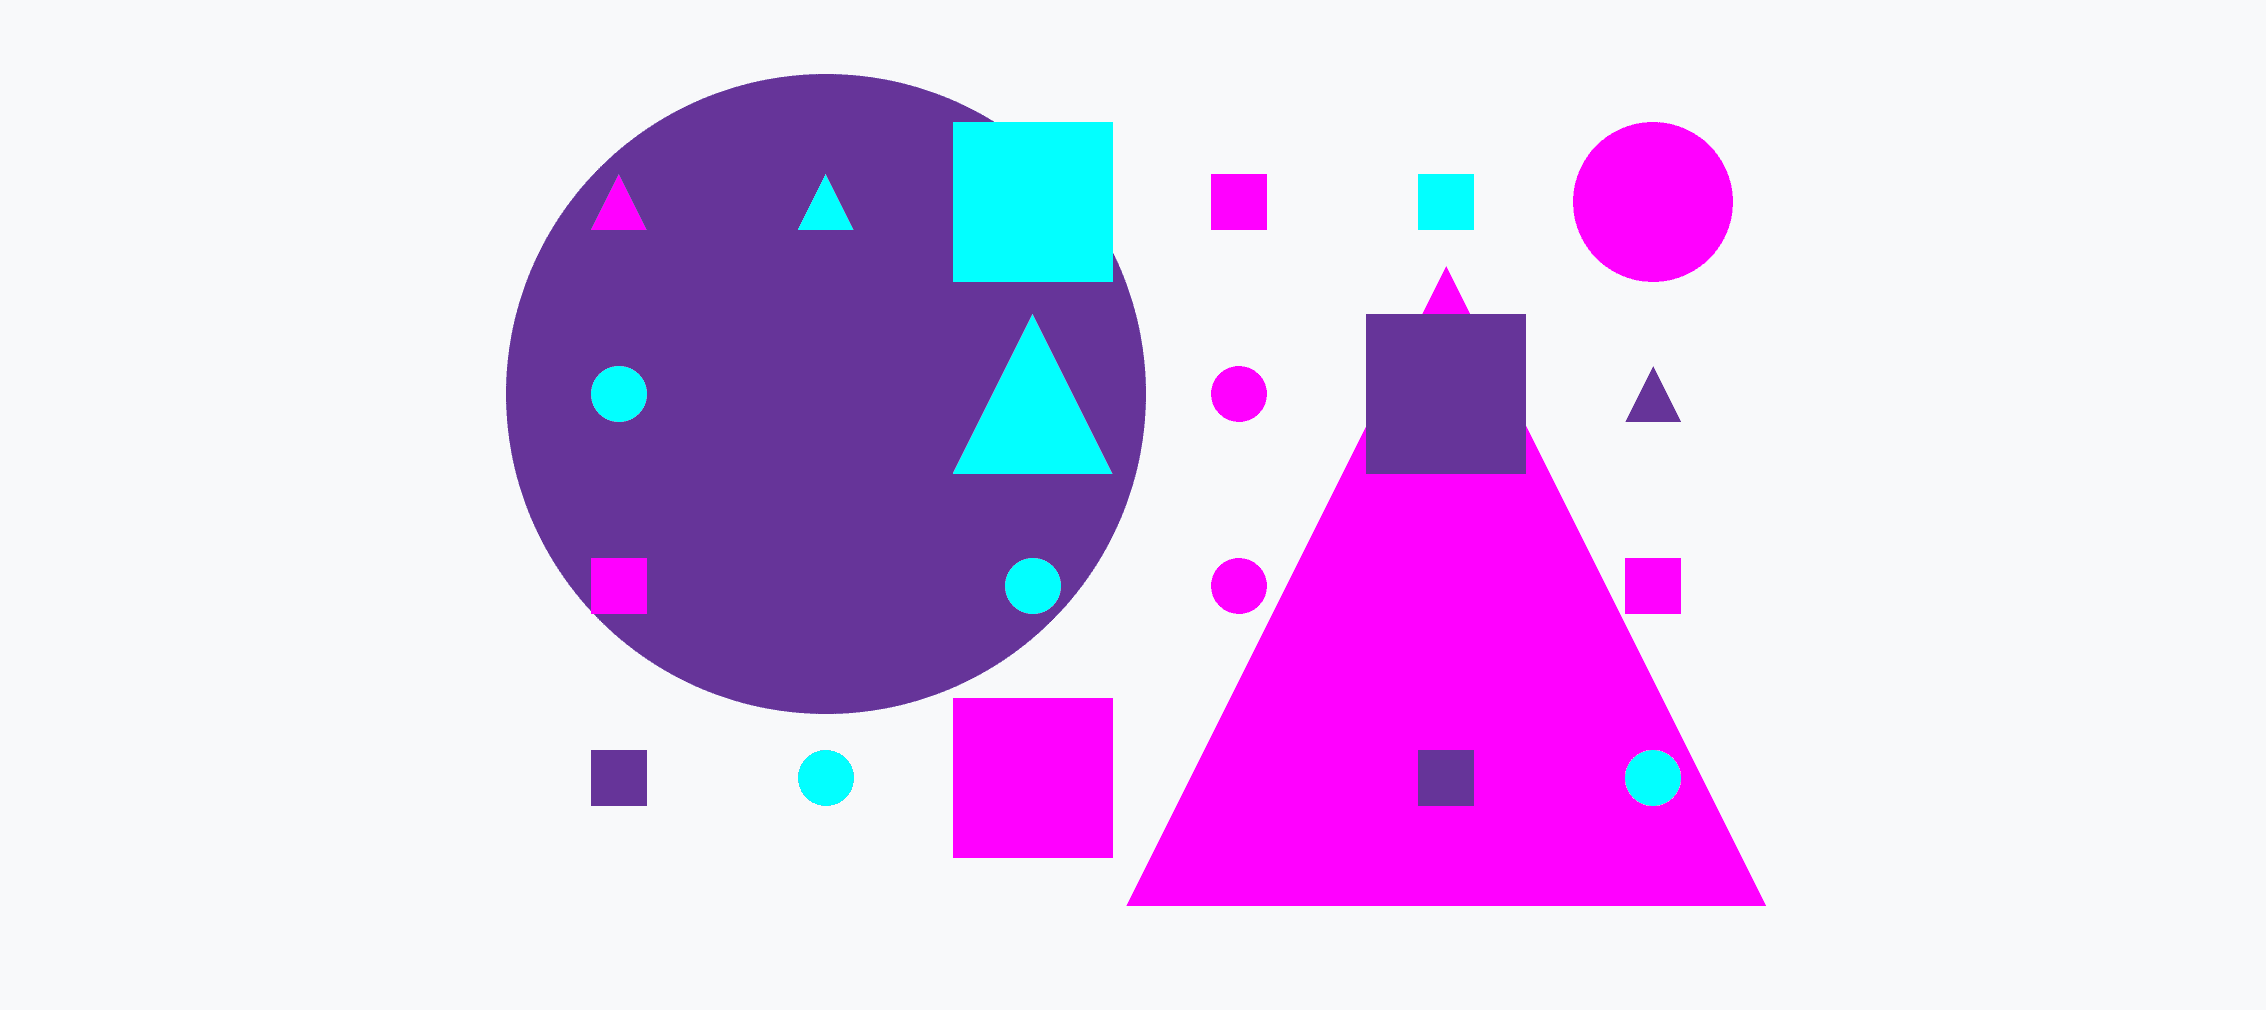 Grille colorée composée de petits et grands cercles, triangles et carrés.